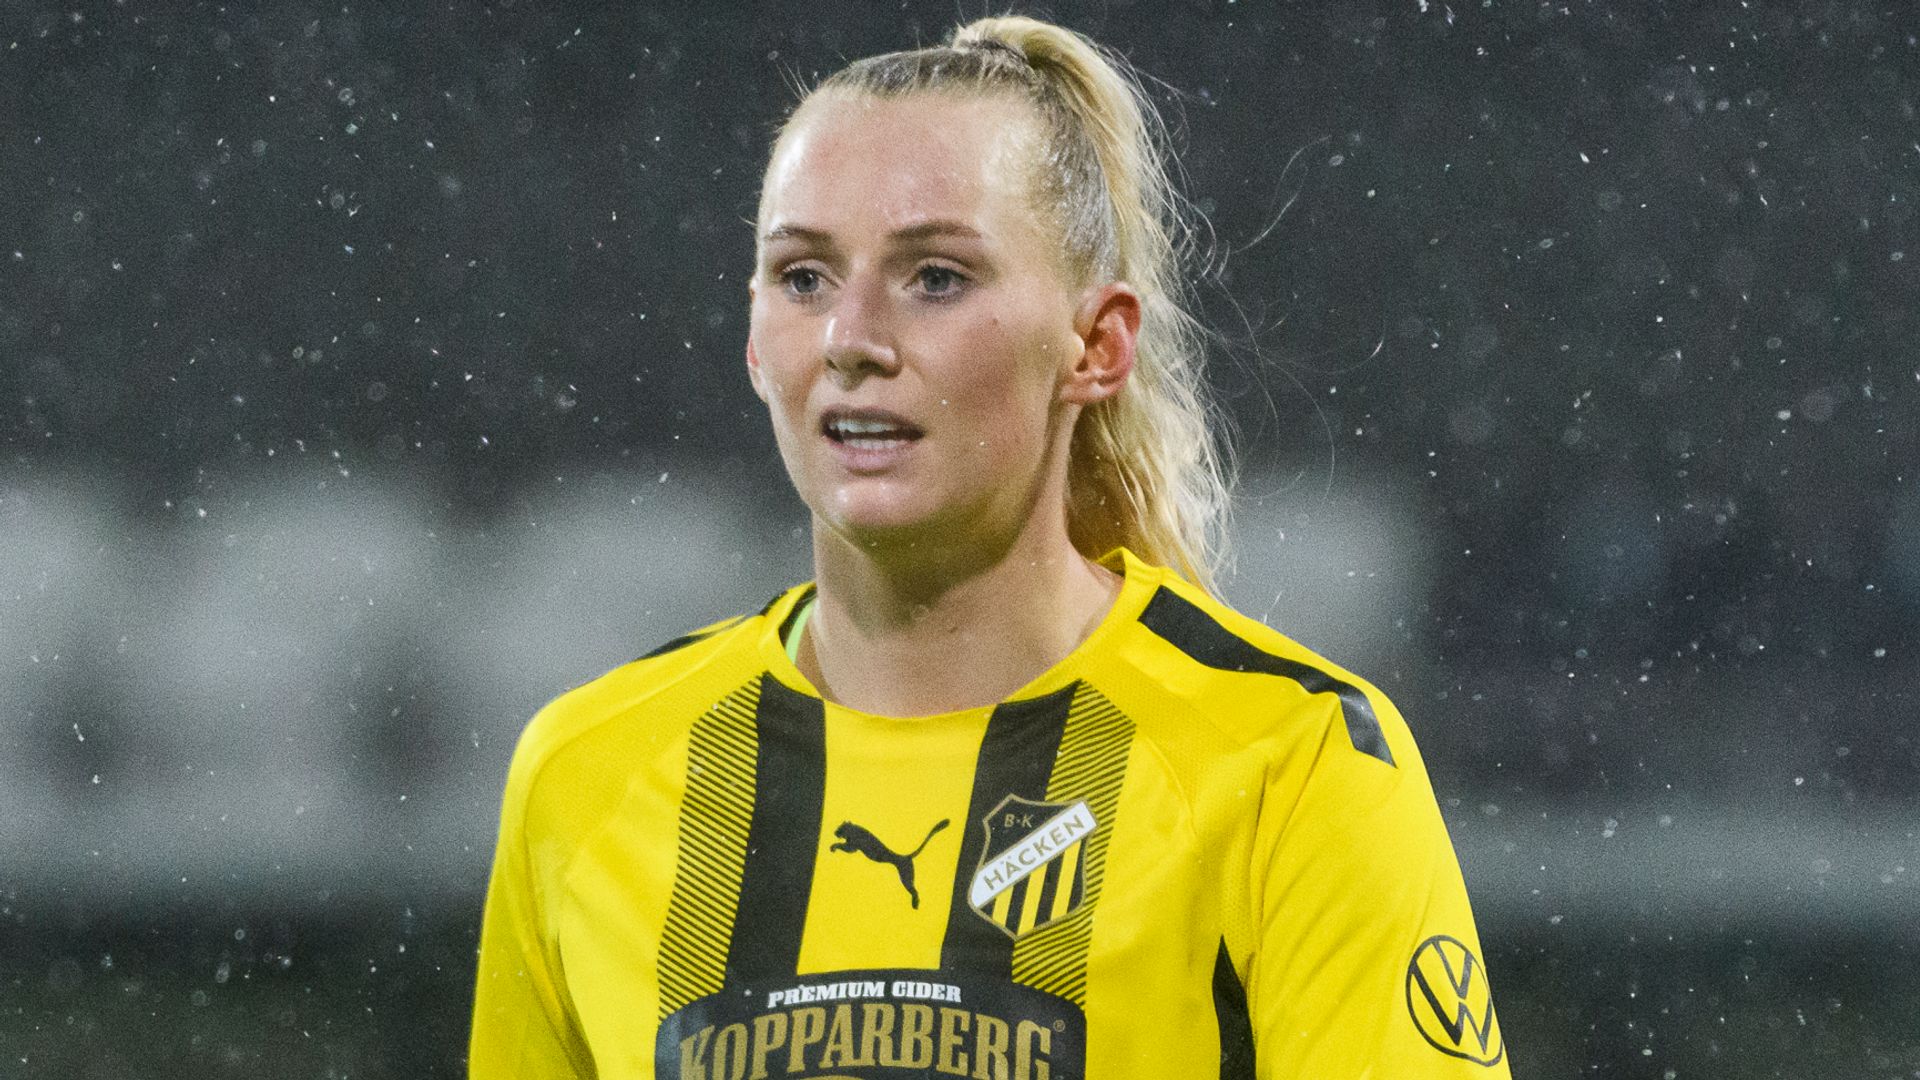 Arsenal Women sign Sweden striker Blackstenius